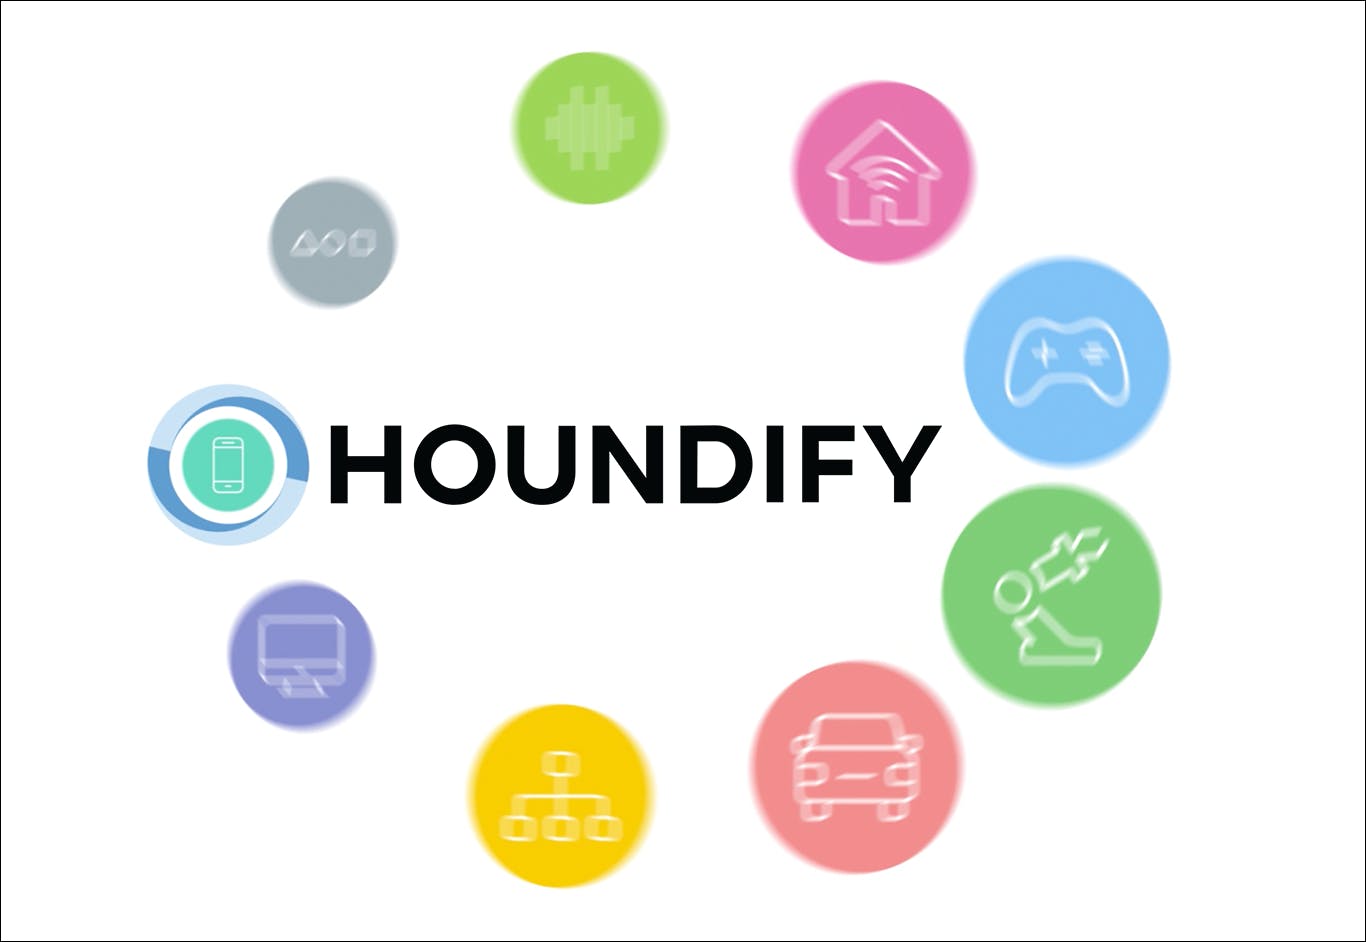 Houndify by SoundHound media 2